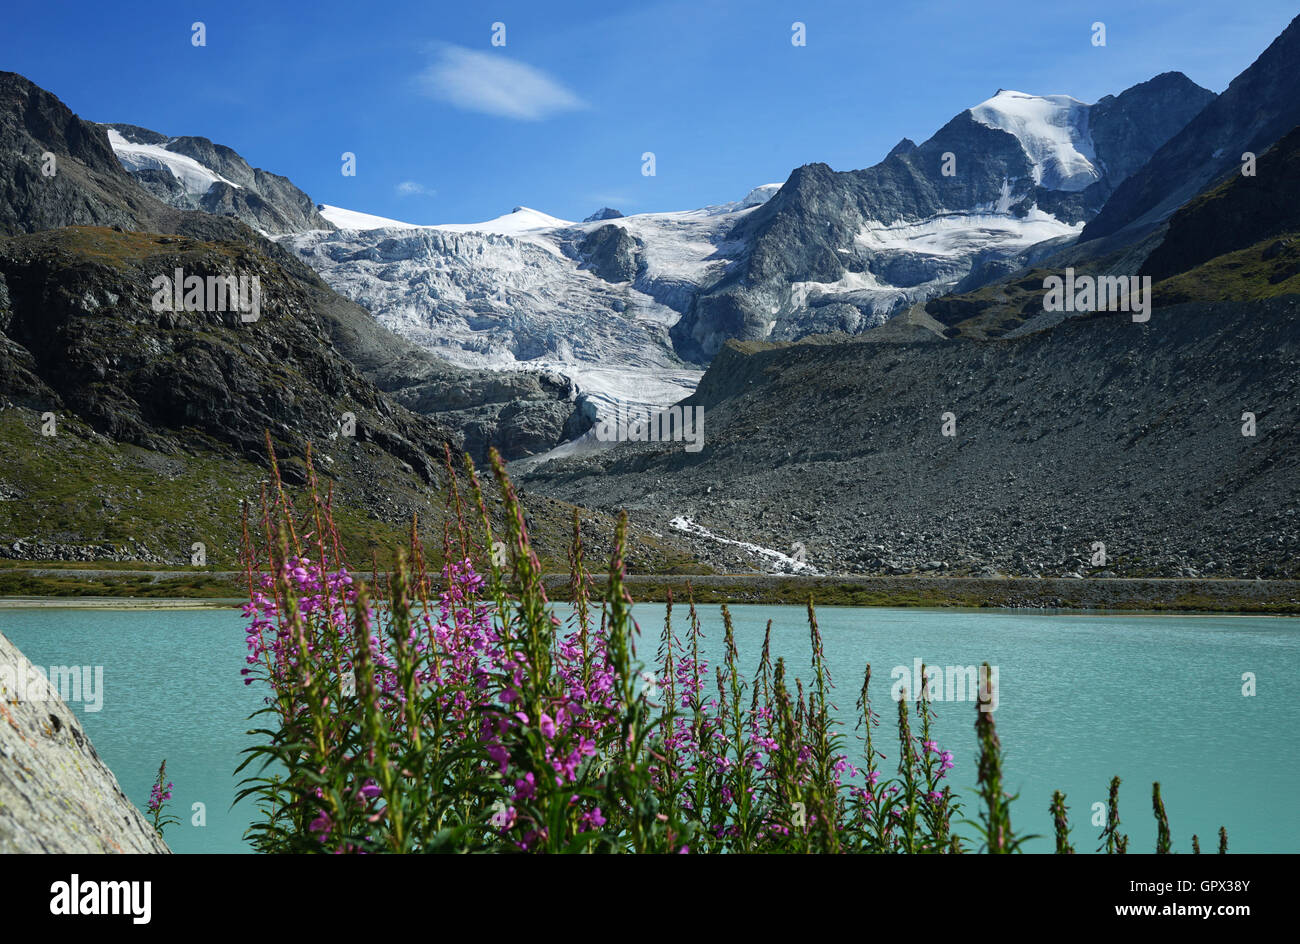 Glacier de Moiry au lac de Moiry, Valais, Suisse Banque D'Images